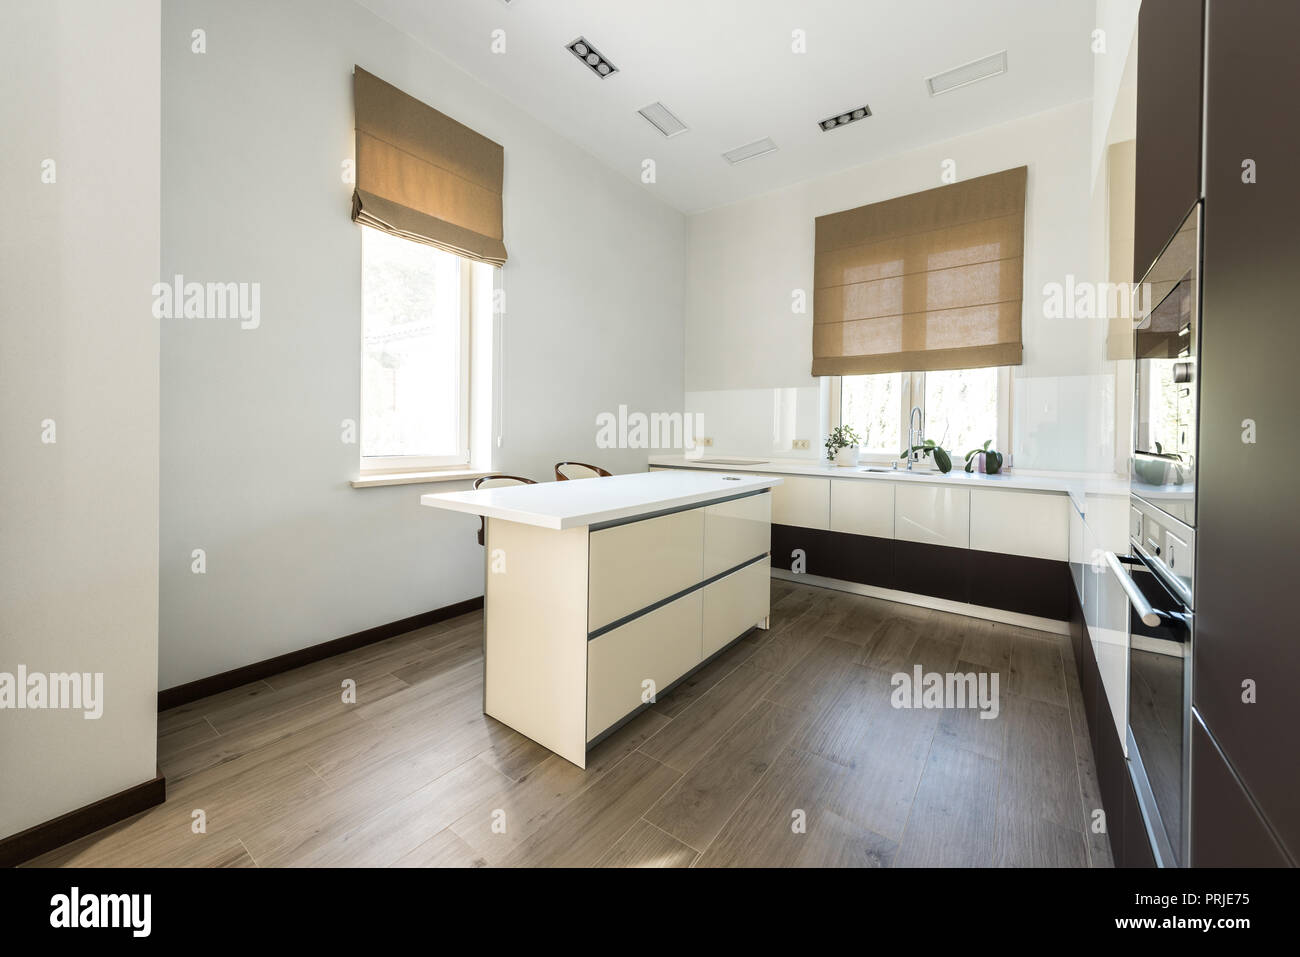 Innenansicht der leeren moderne Küche mit Möbeln in hellen Farben Stockfoto